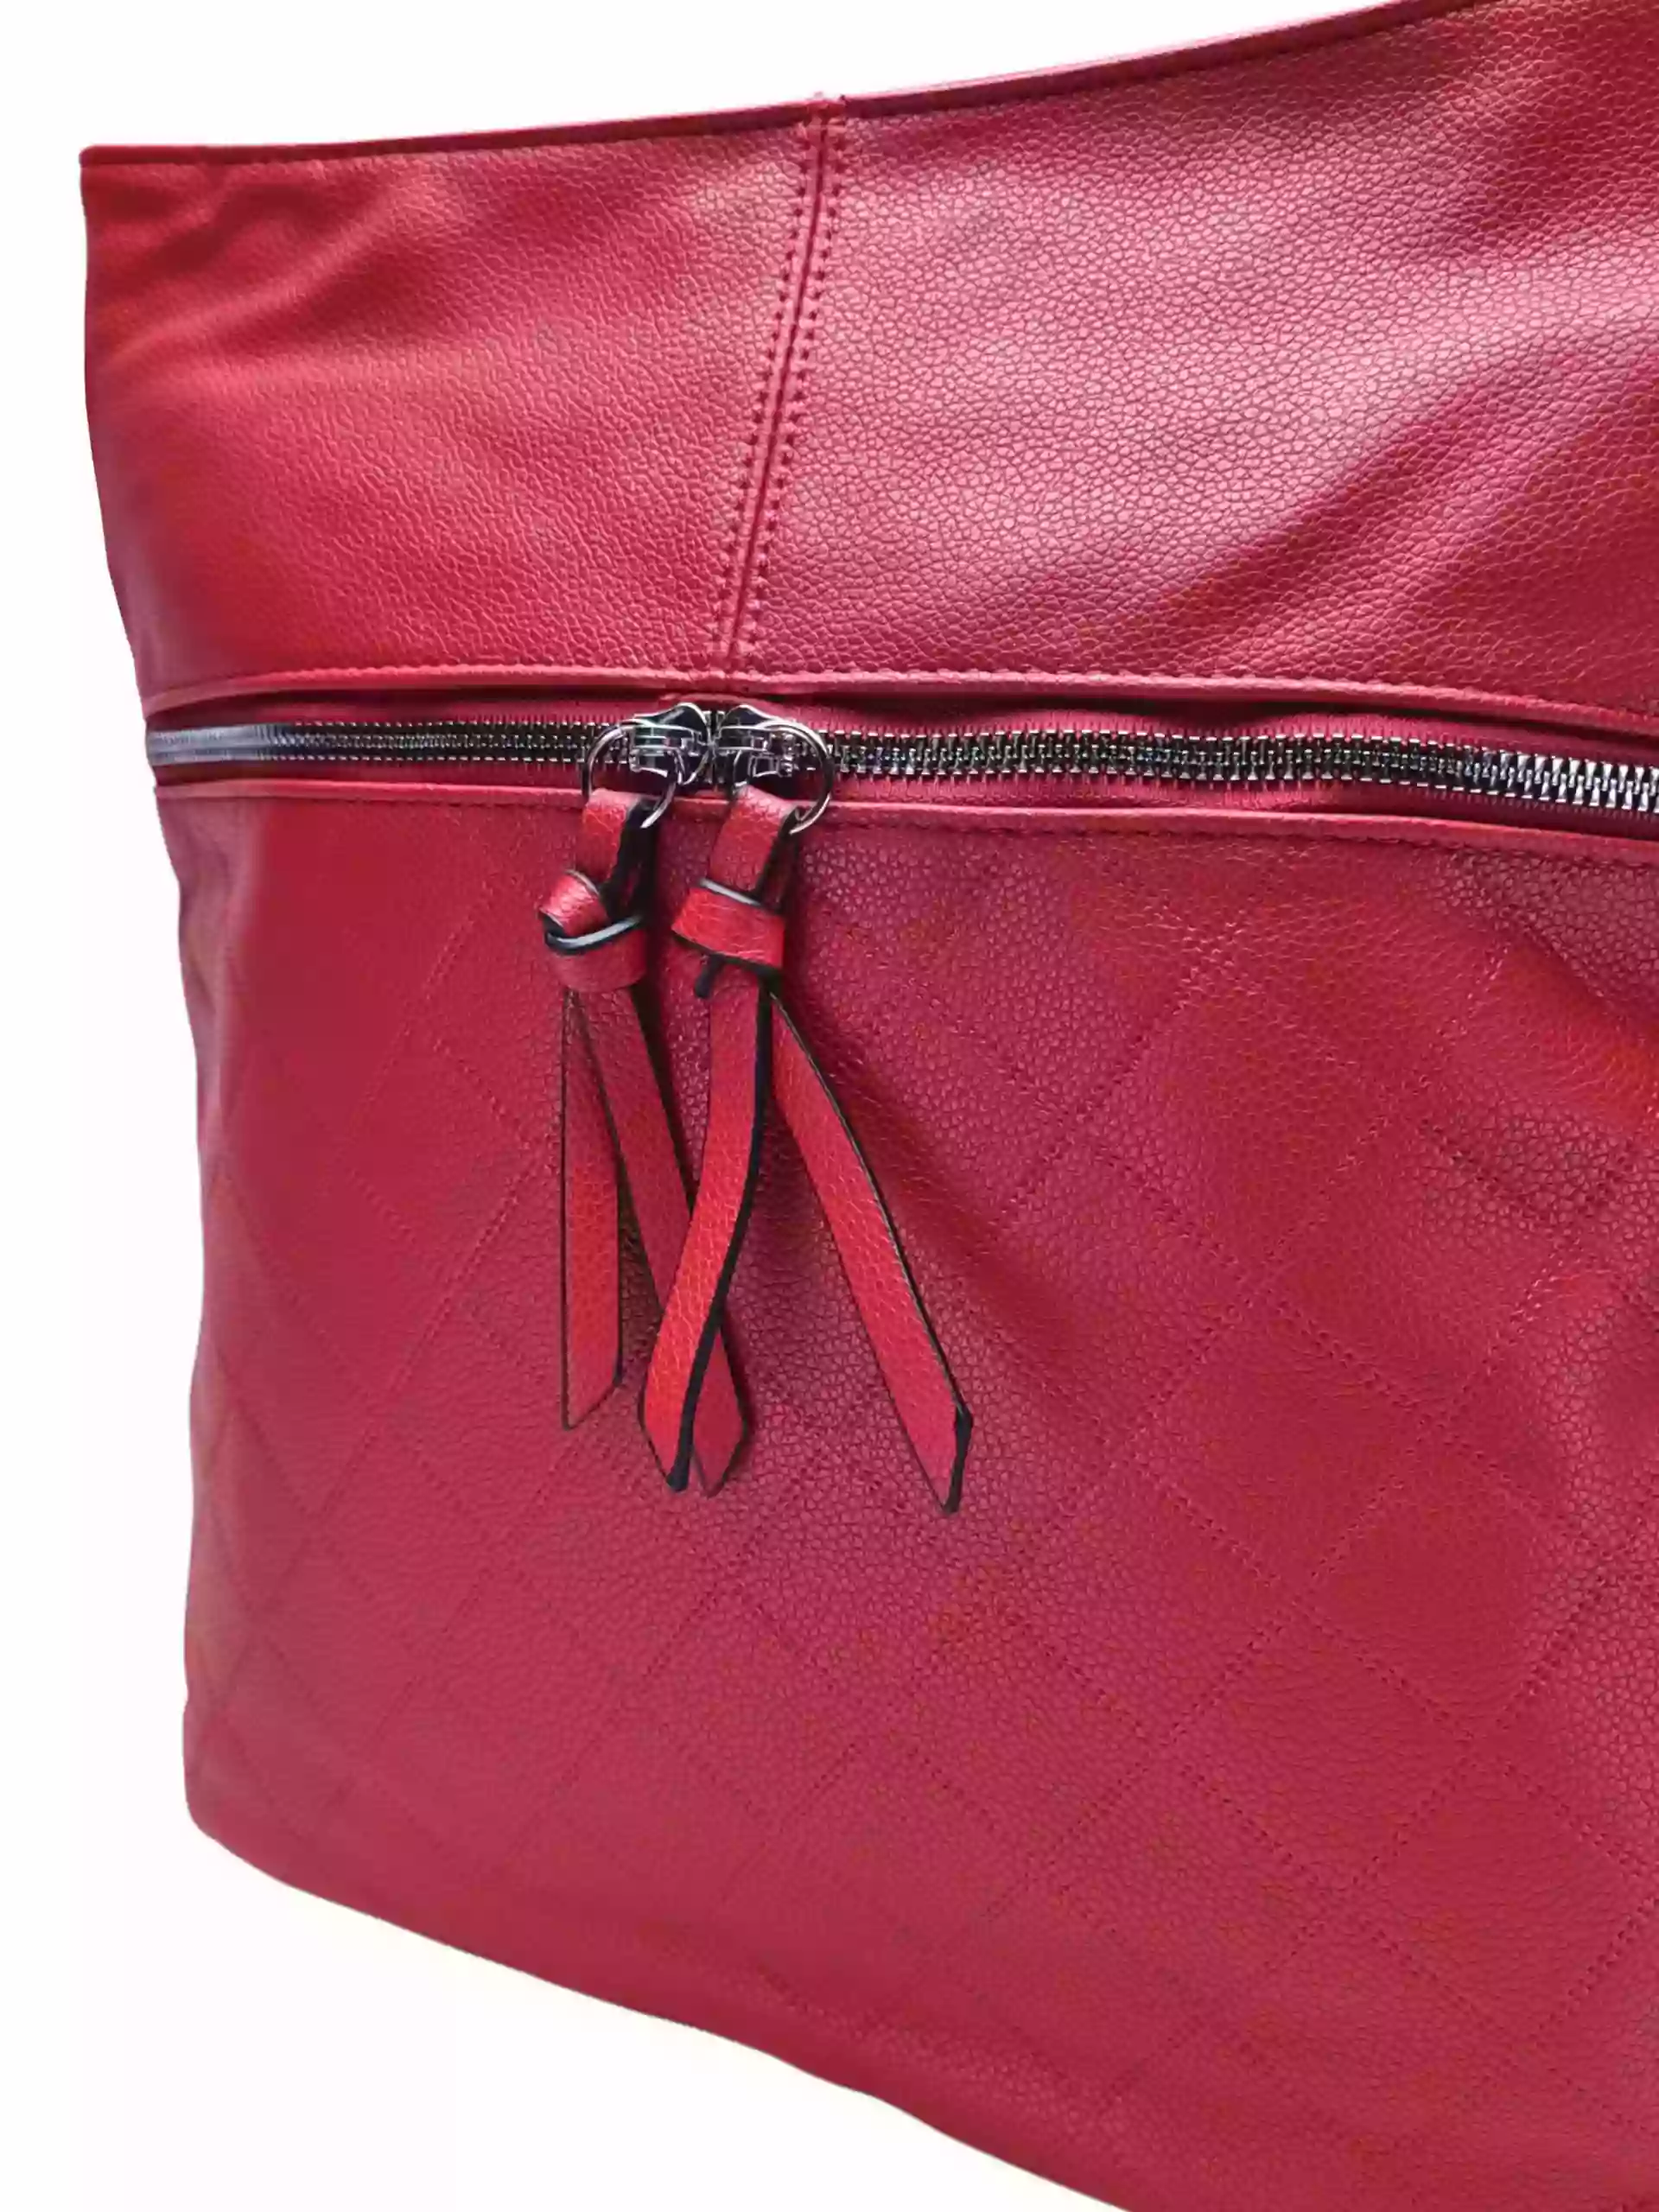 Tmavě červená crossbody kabelka s koso vzorem, Tapple, H22070, detail crossbody kabelky